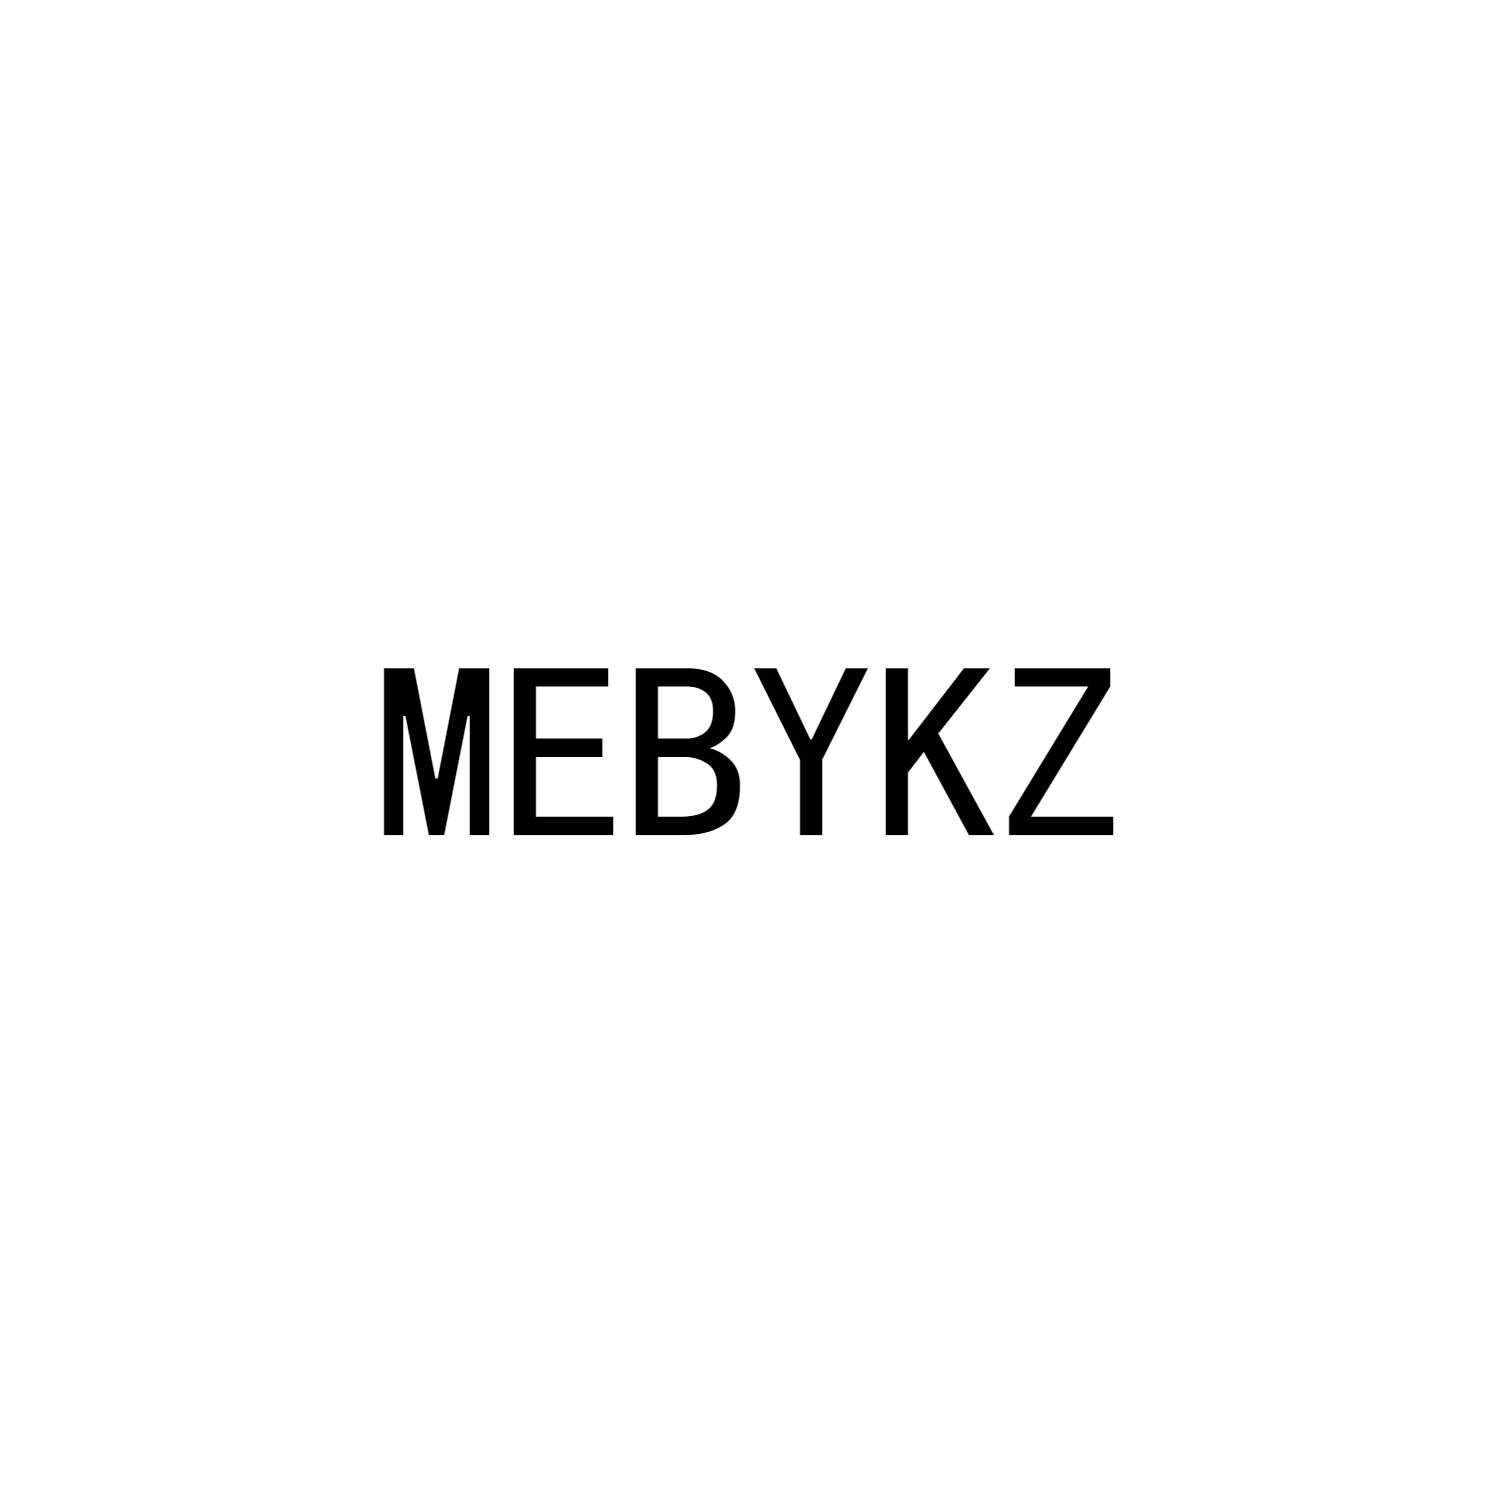 MEBYKZ